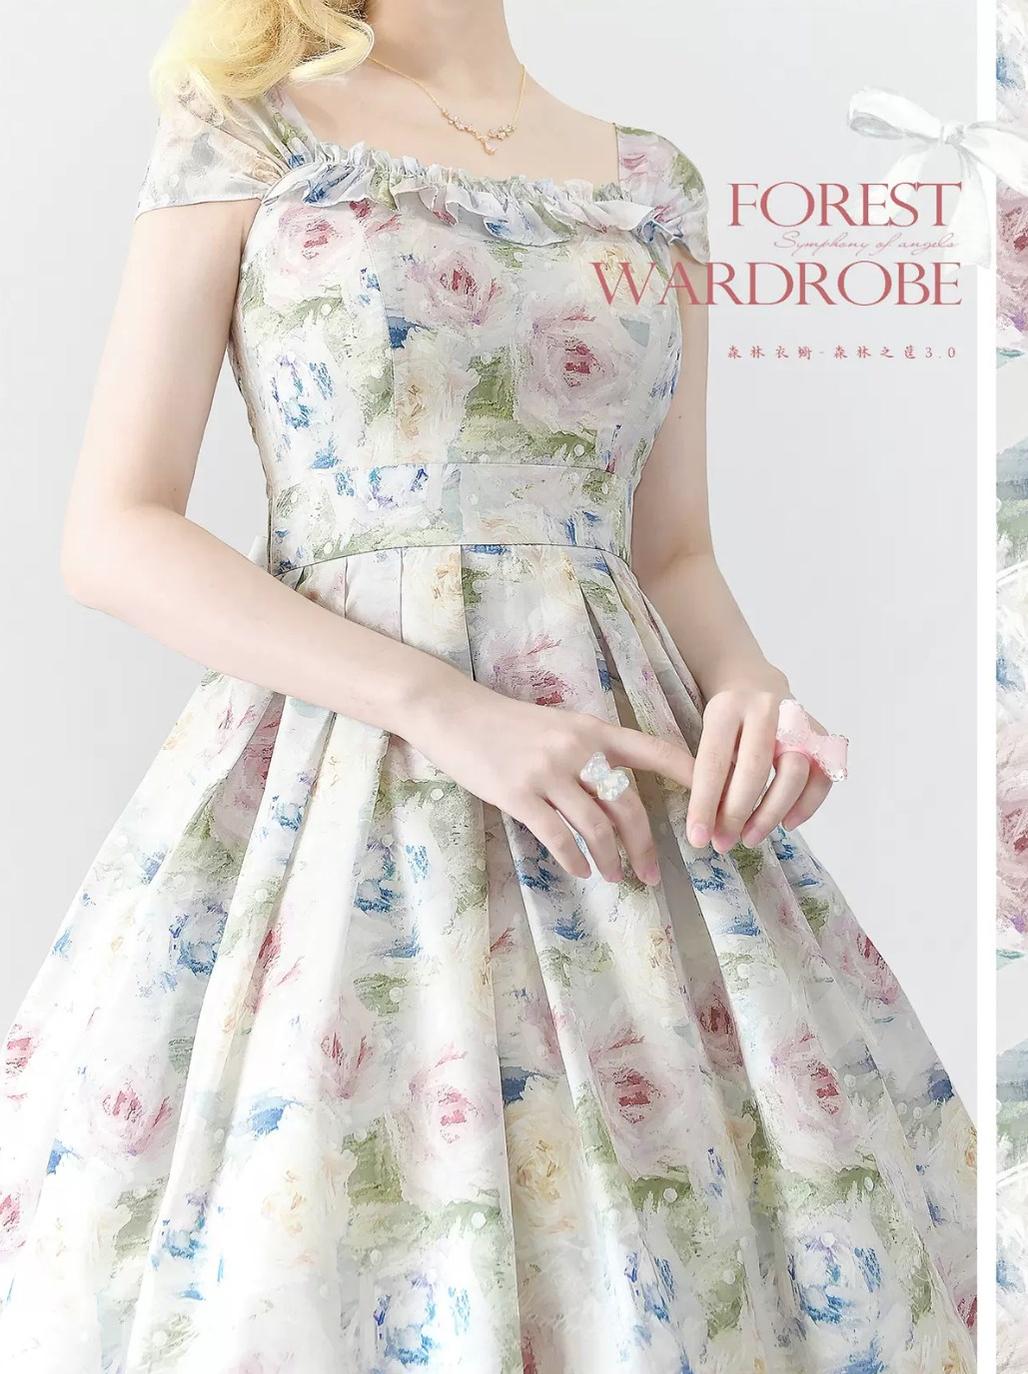 Forest Wardrobe~Forest Basket 3.0~Vintage Lolita JSK Dress Summer Thin Dress S oil painting rose 